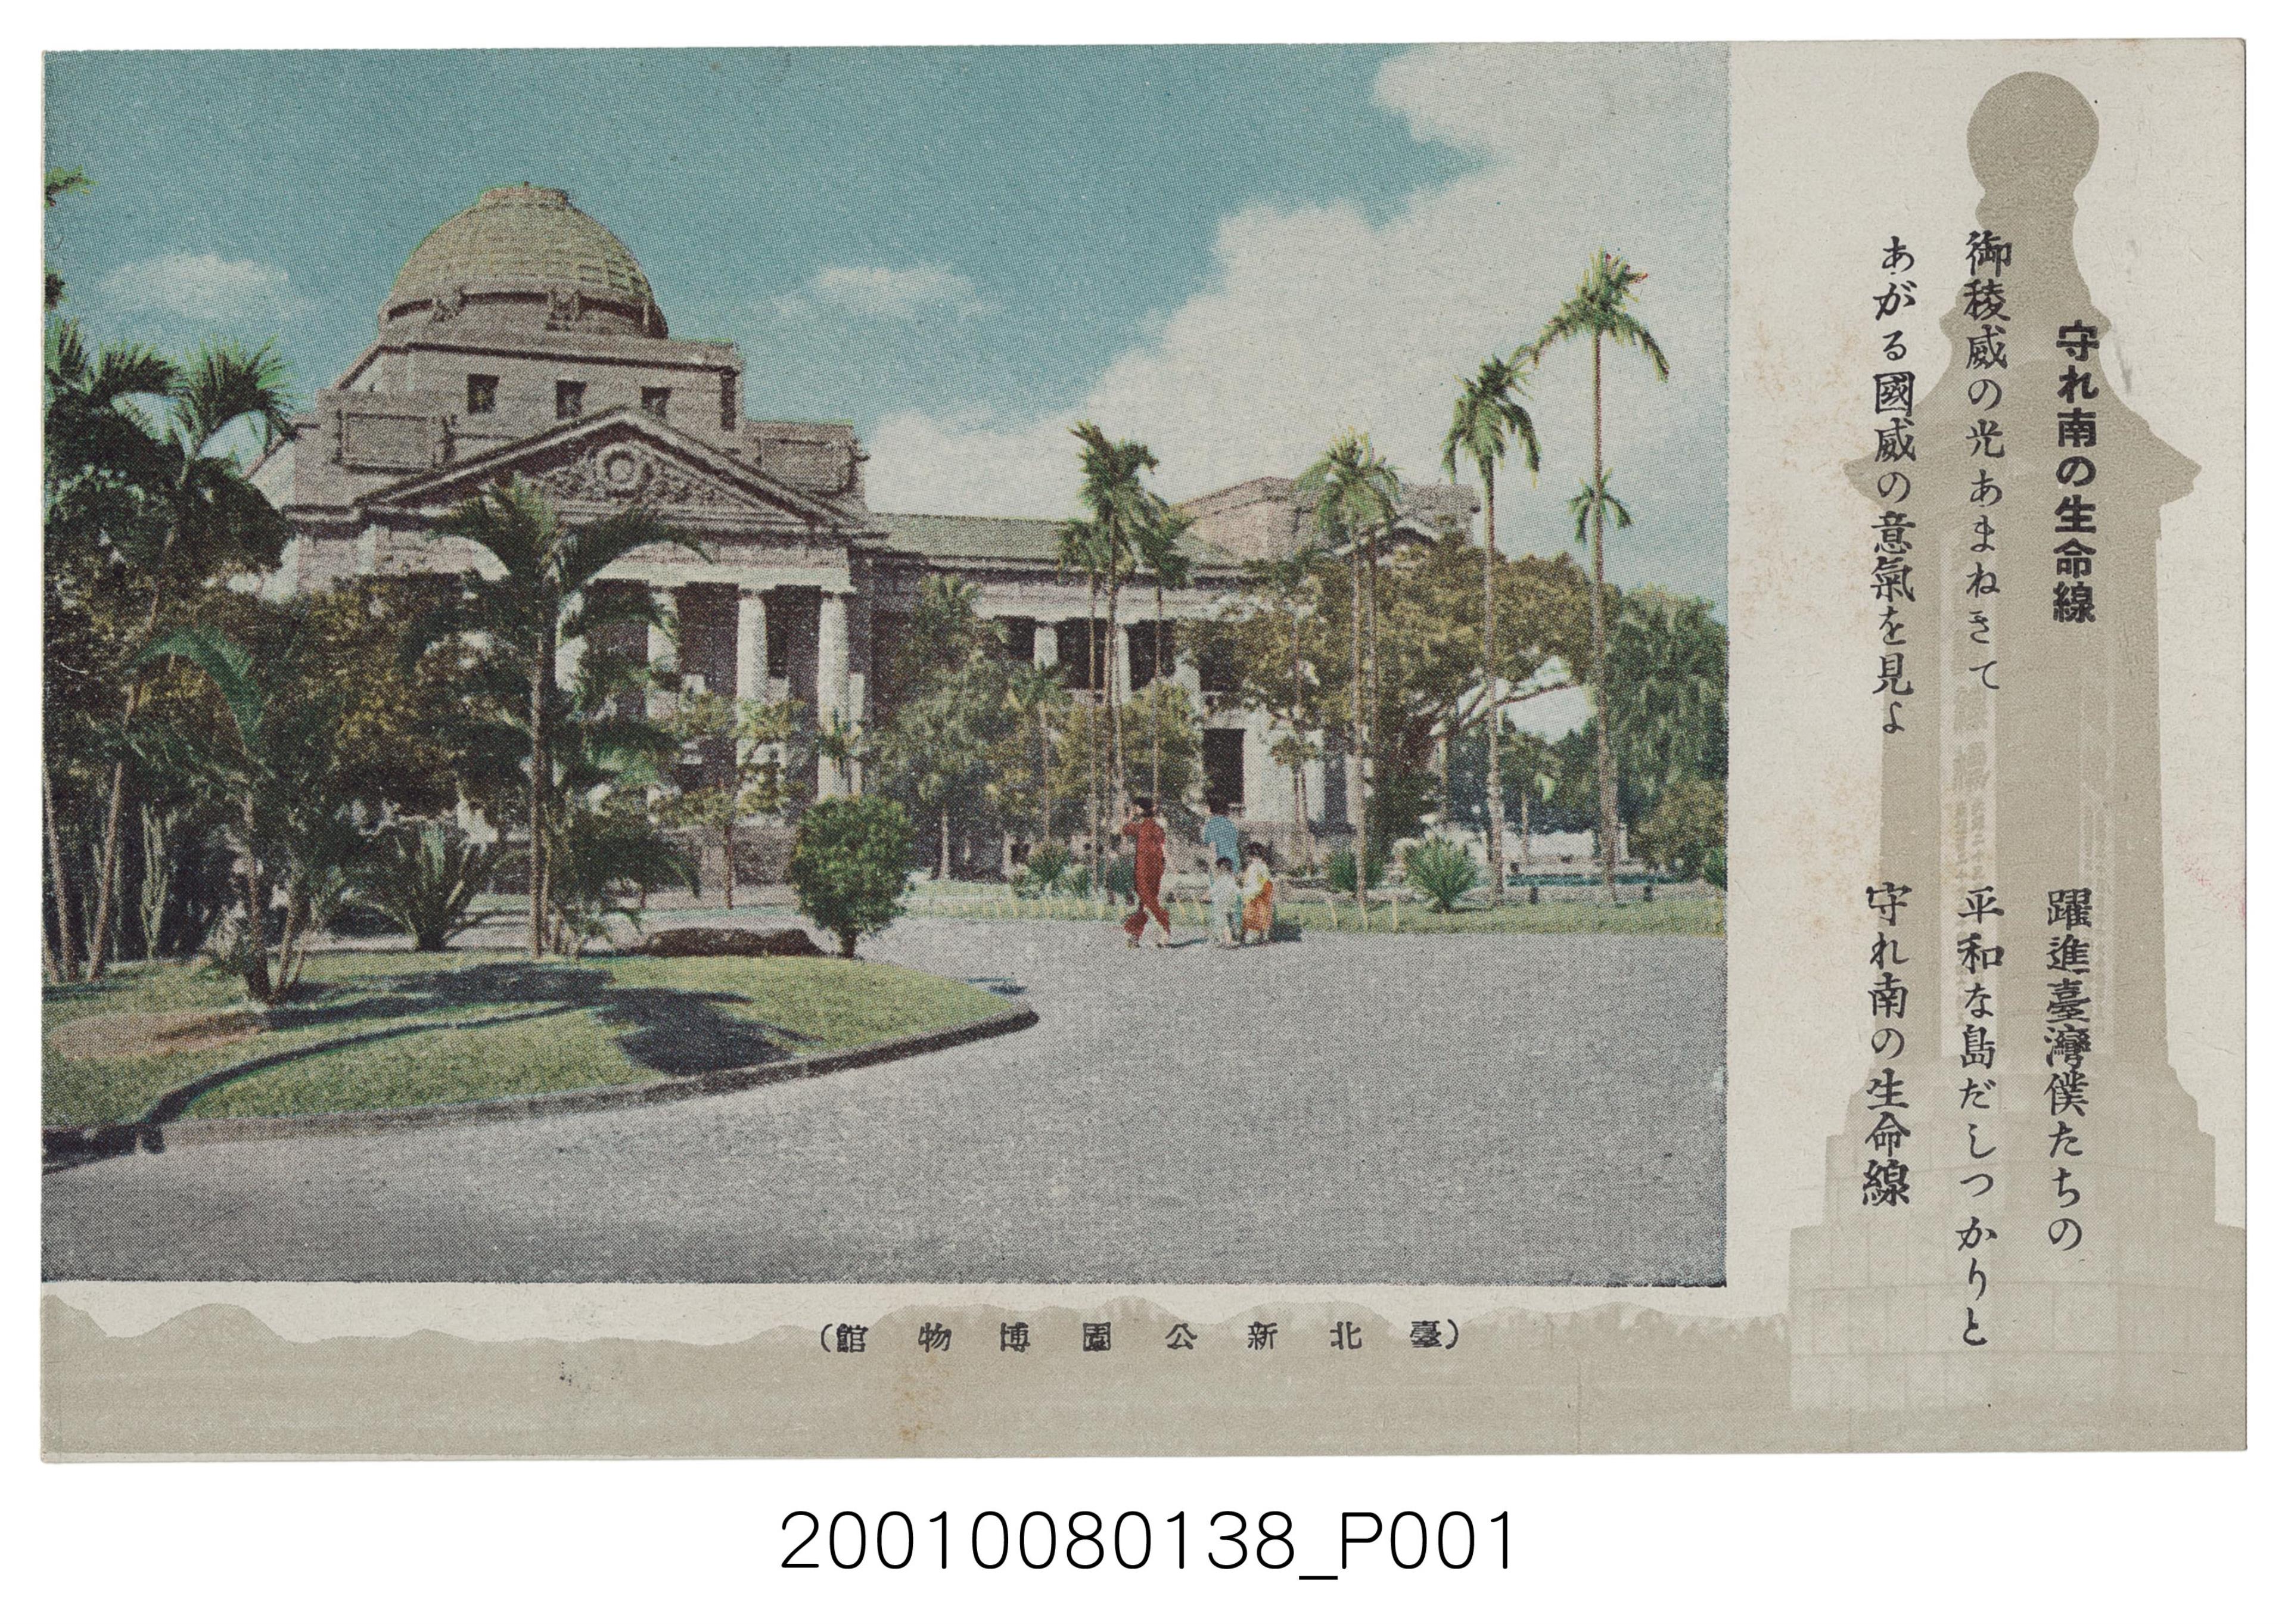 共同印刷株式會社印刷臺北新公園博物館 (共2張)